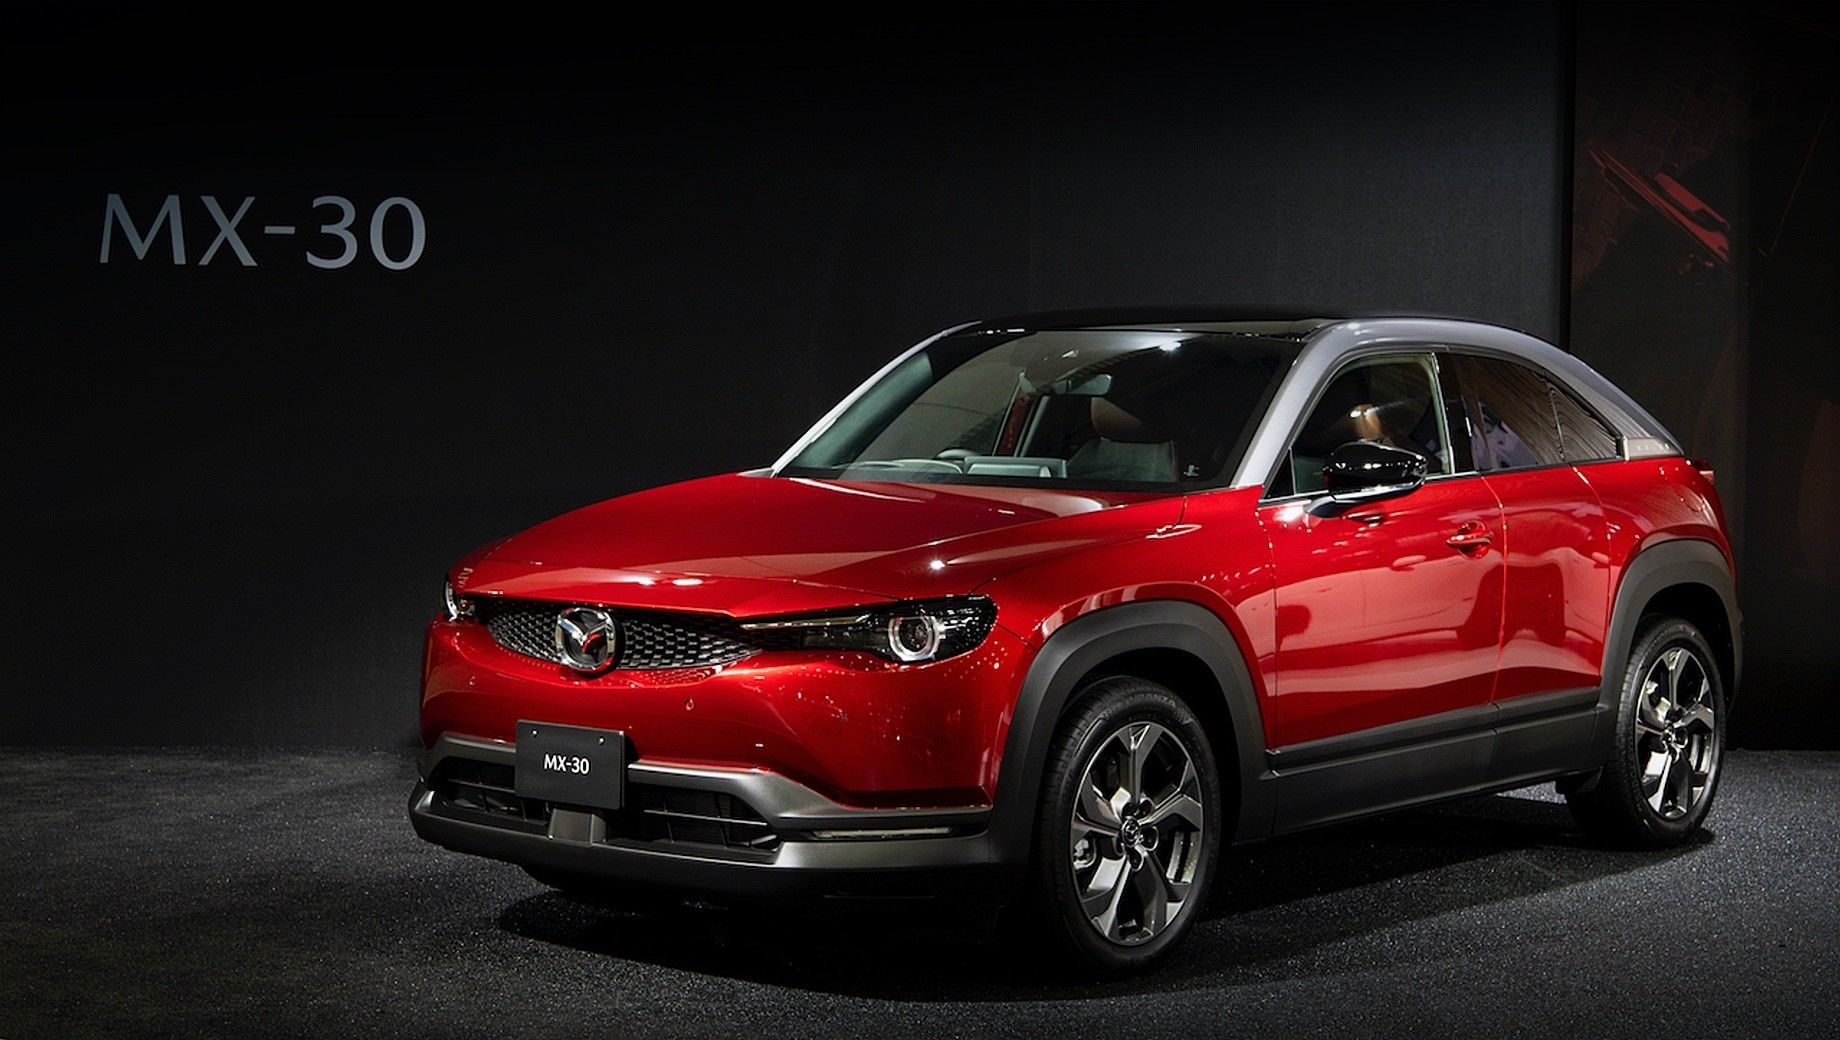 Mazda mx-30. Продажи гибридного кроссовера Mazda MX-30 в Японии стартуют через месяц-полтора, а до Европы модель доберётся в начале 2021 года. Позже начнутся поставки электрической модификации. В Германии такая стоит от 23 165 евро (2 млн рублей) с учётом государственного субсидирования покупки в размере 9480 евро (820 тысяч рублей).